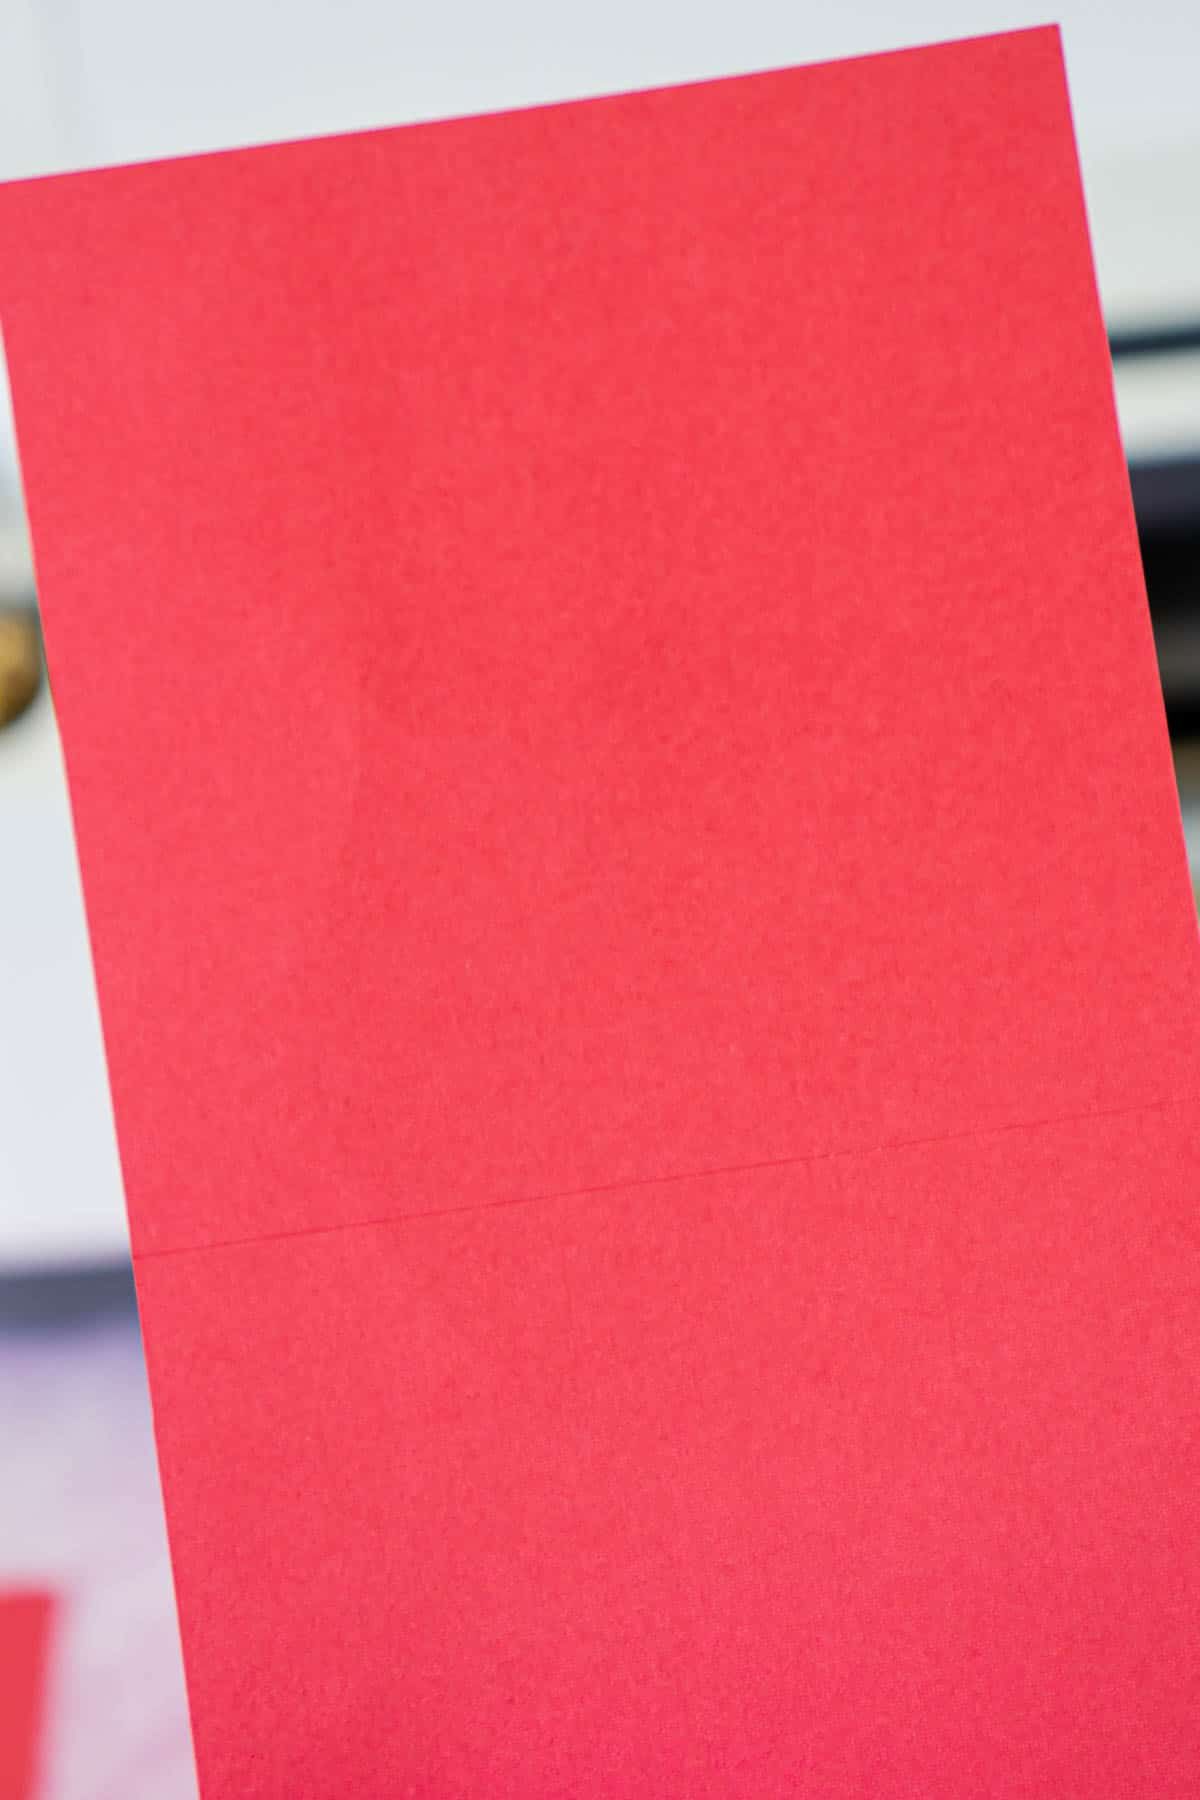 Bucată de carton roșu cu linii de scor